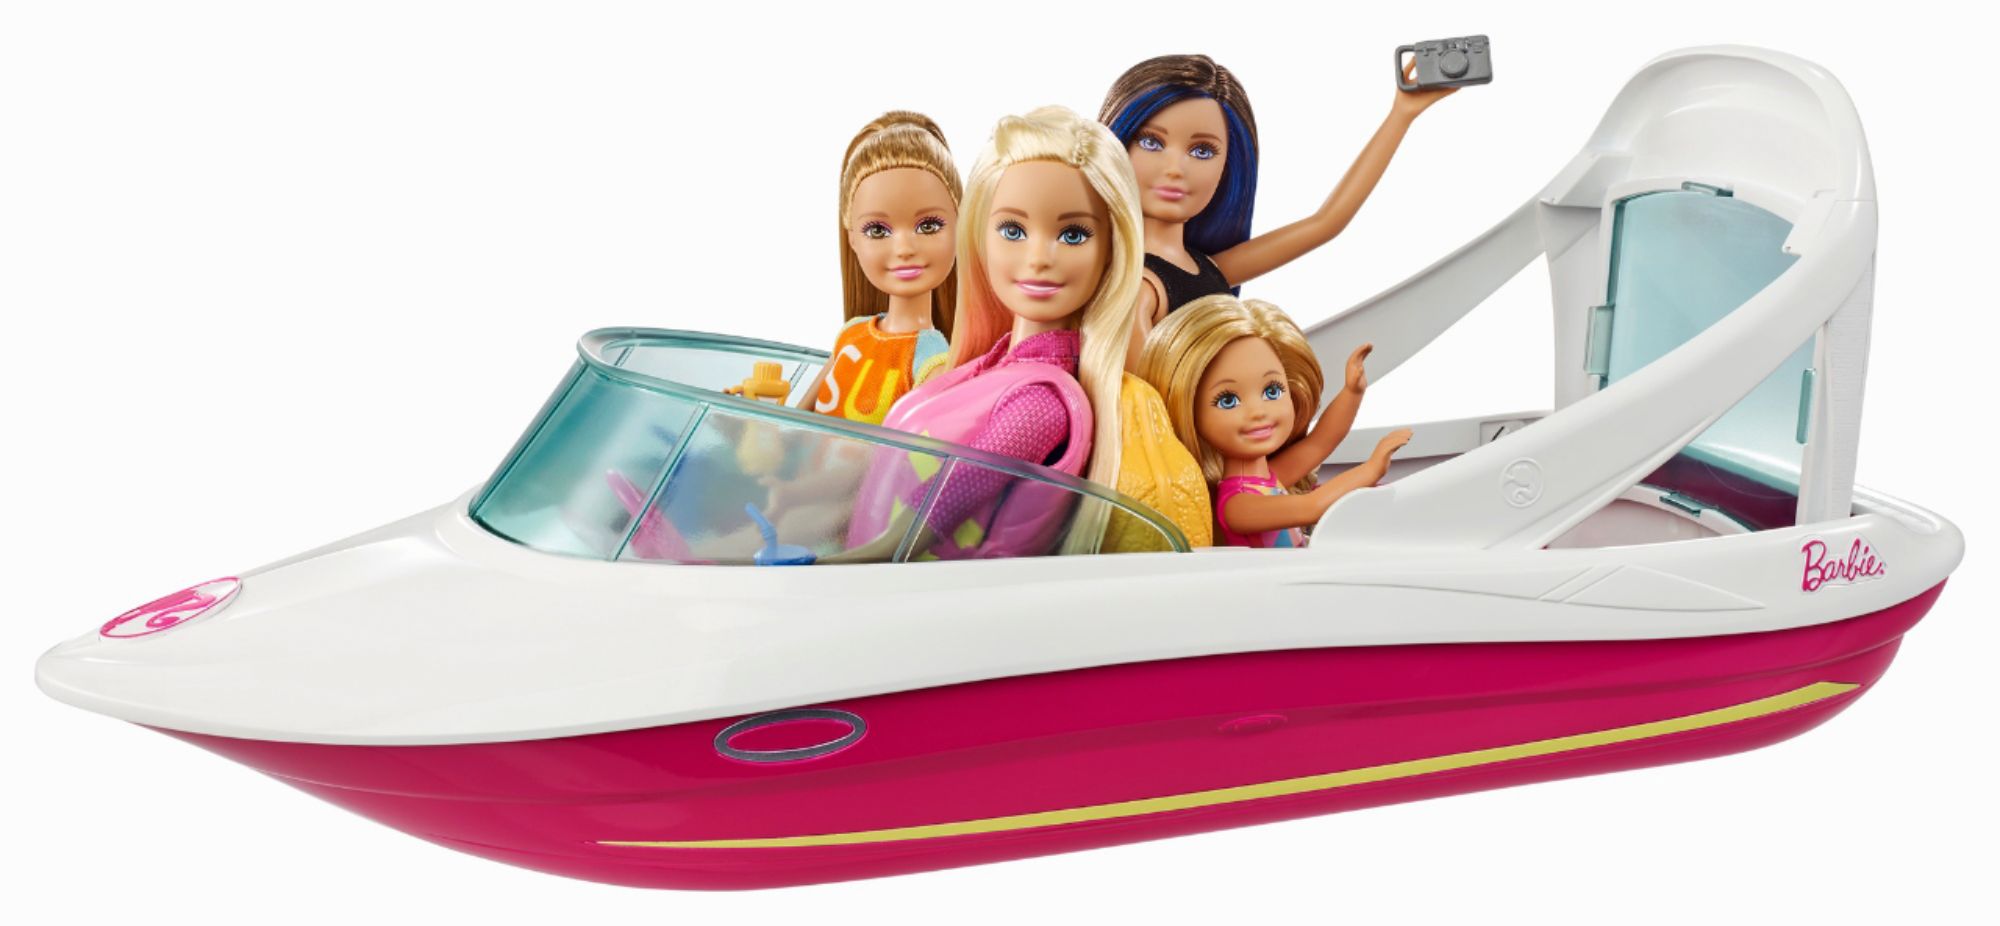 barbie boat set